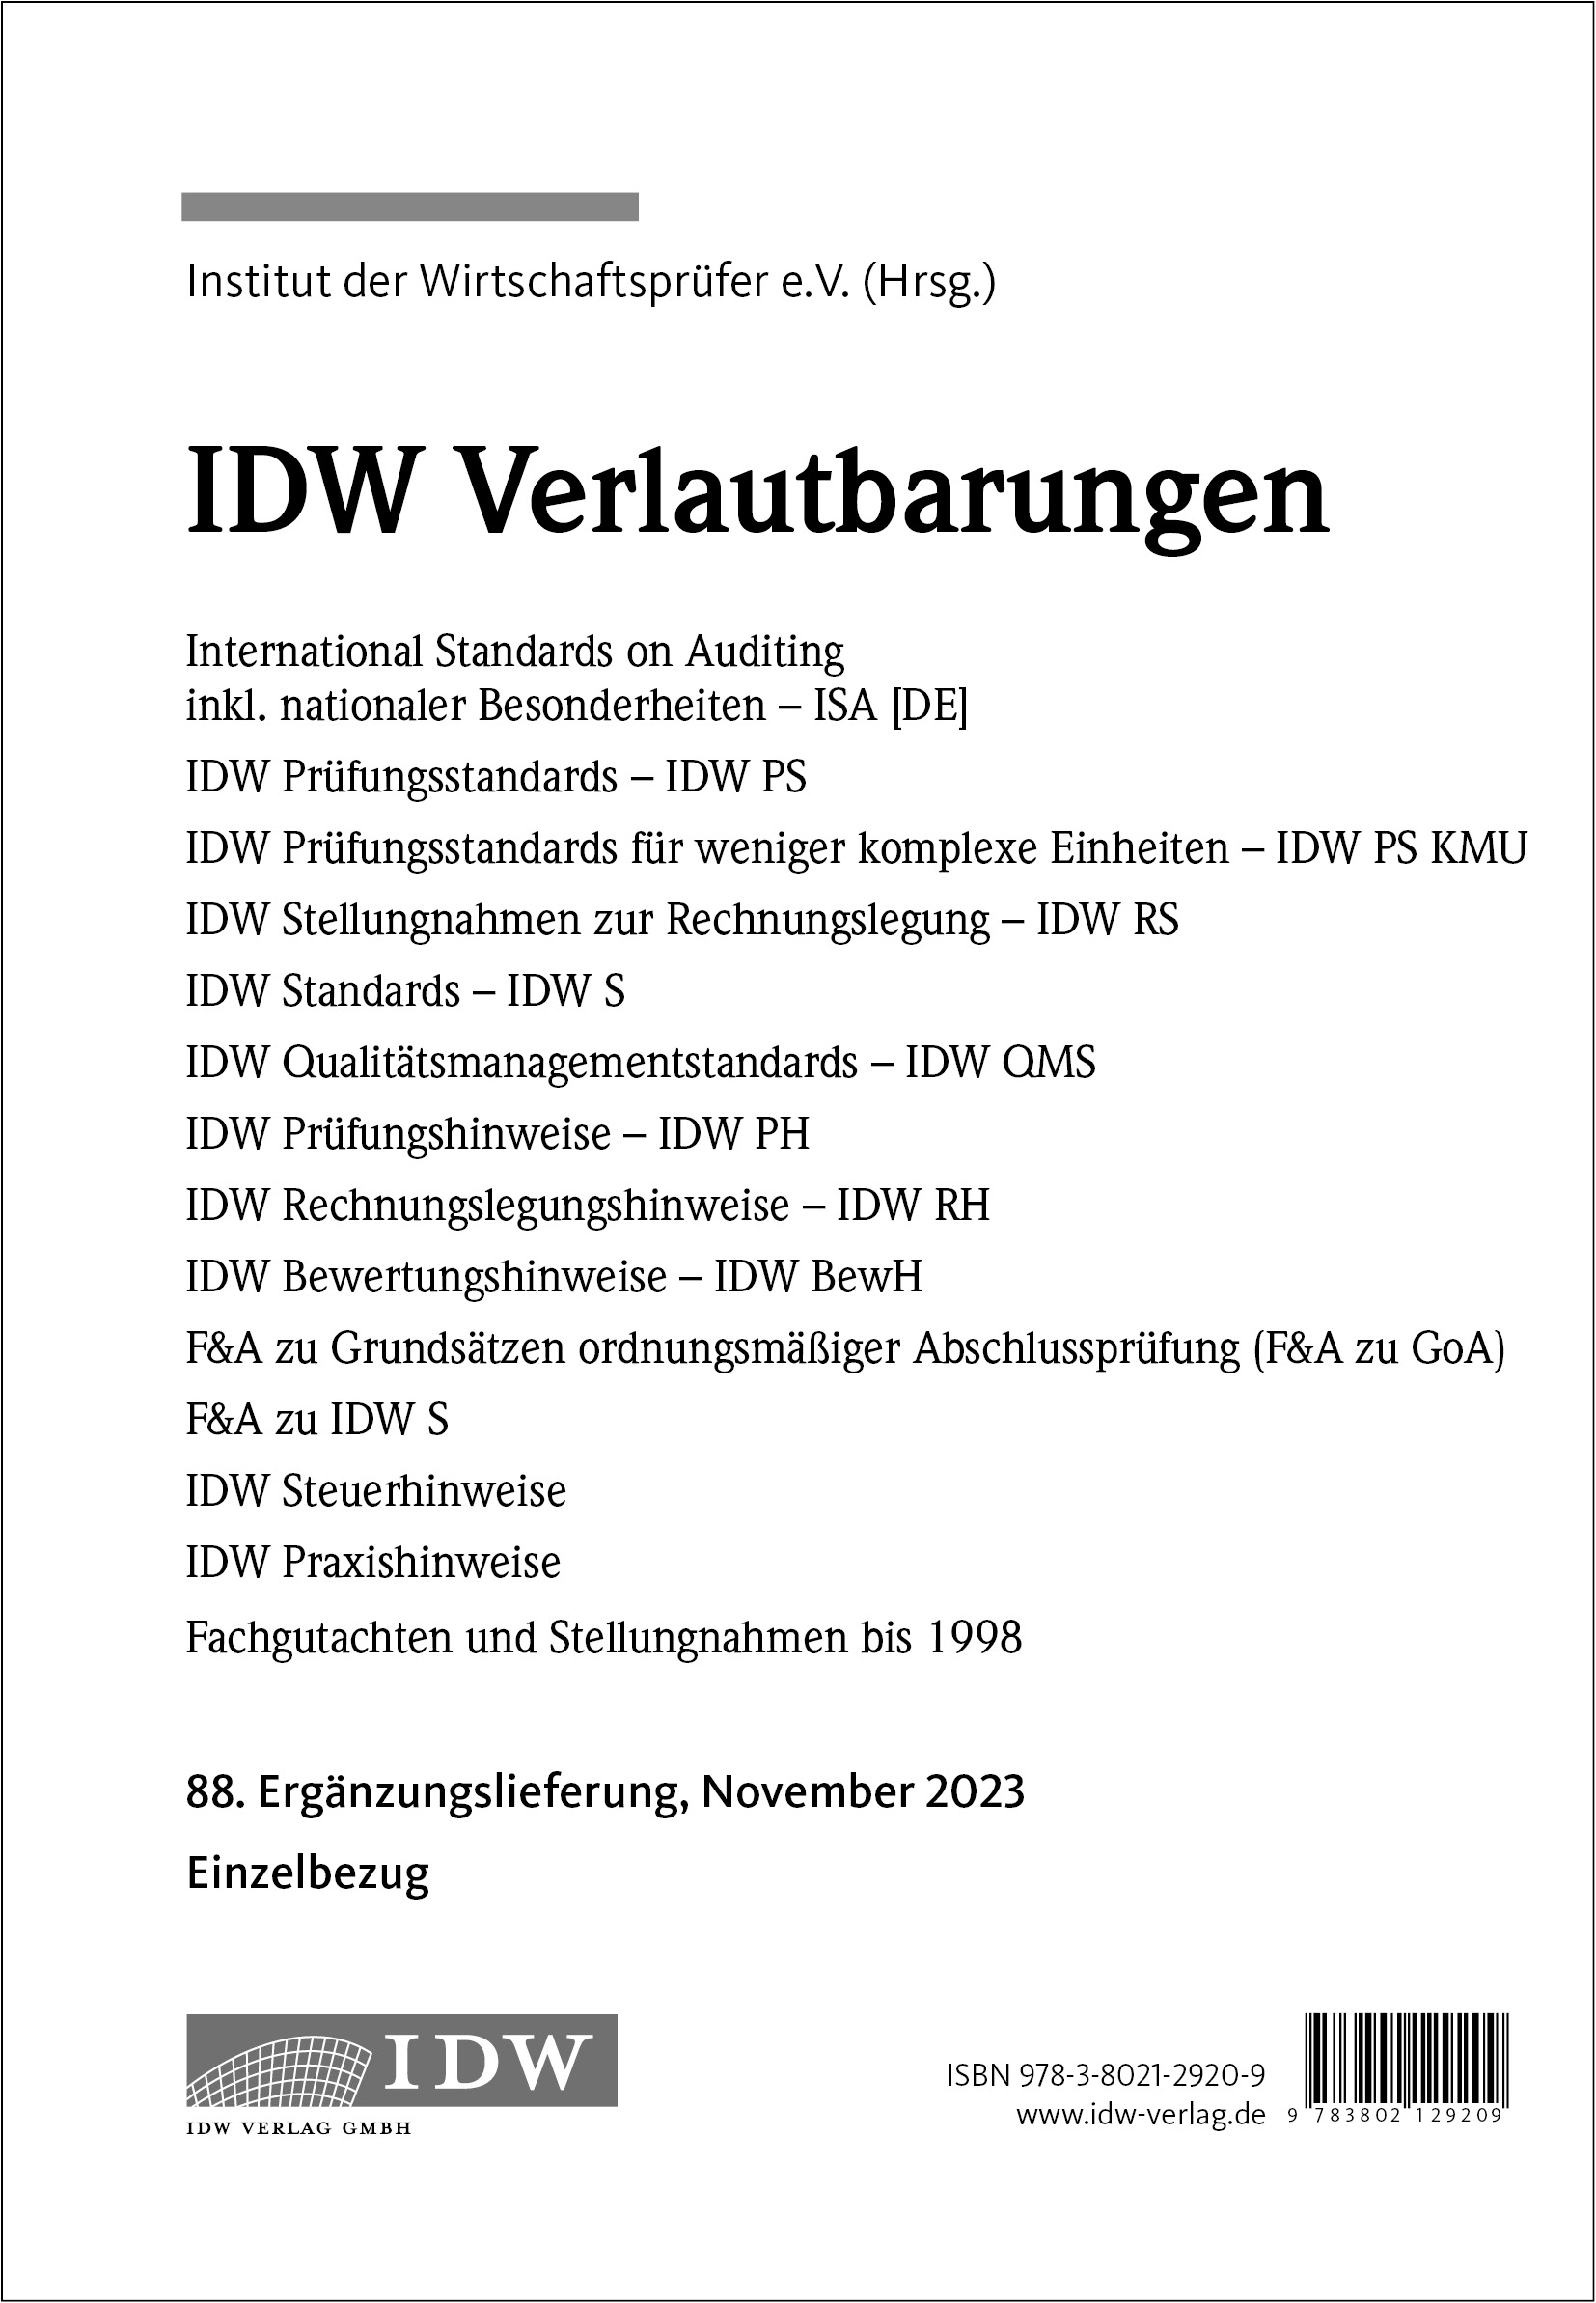 IDW Verlautbarungen 88. Ergänzungslieferung November 2023